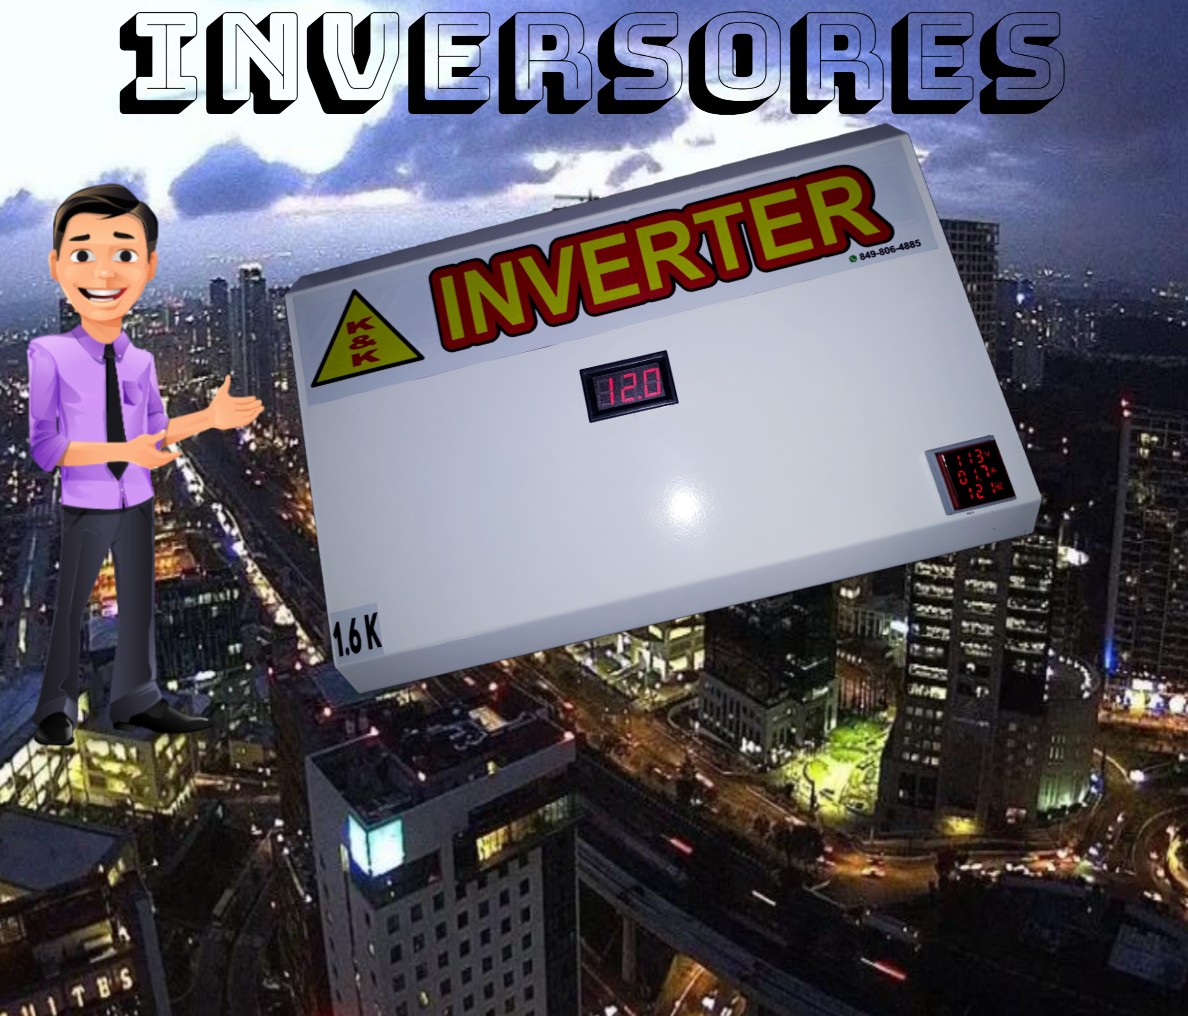 Inversores de 1.6kilos 12vdc ups series ( inverter de bajo consumo)